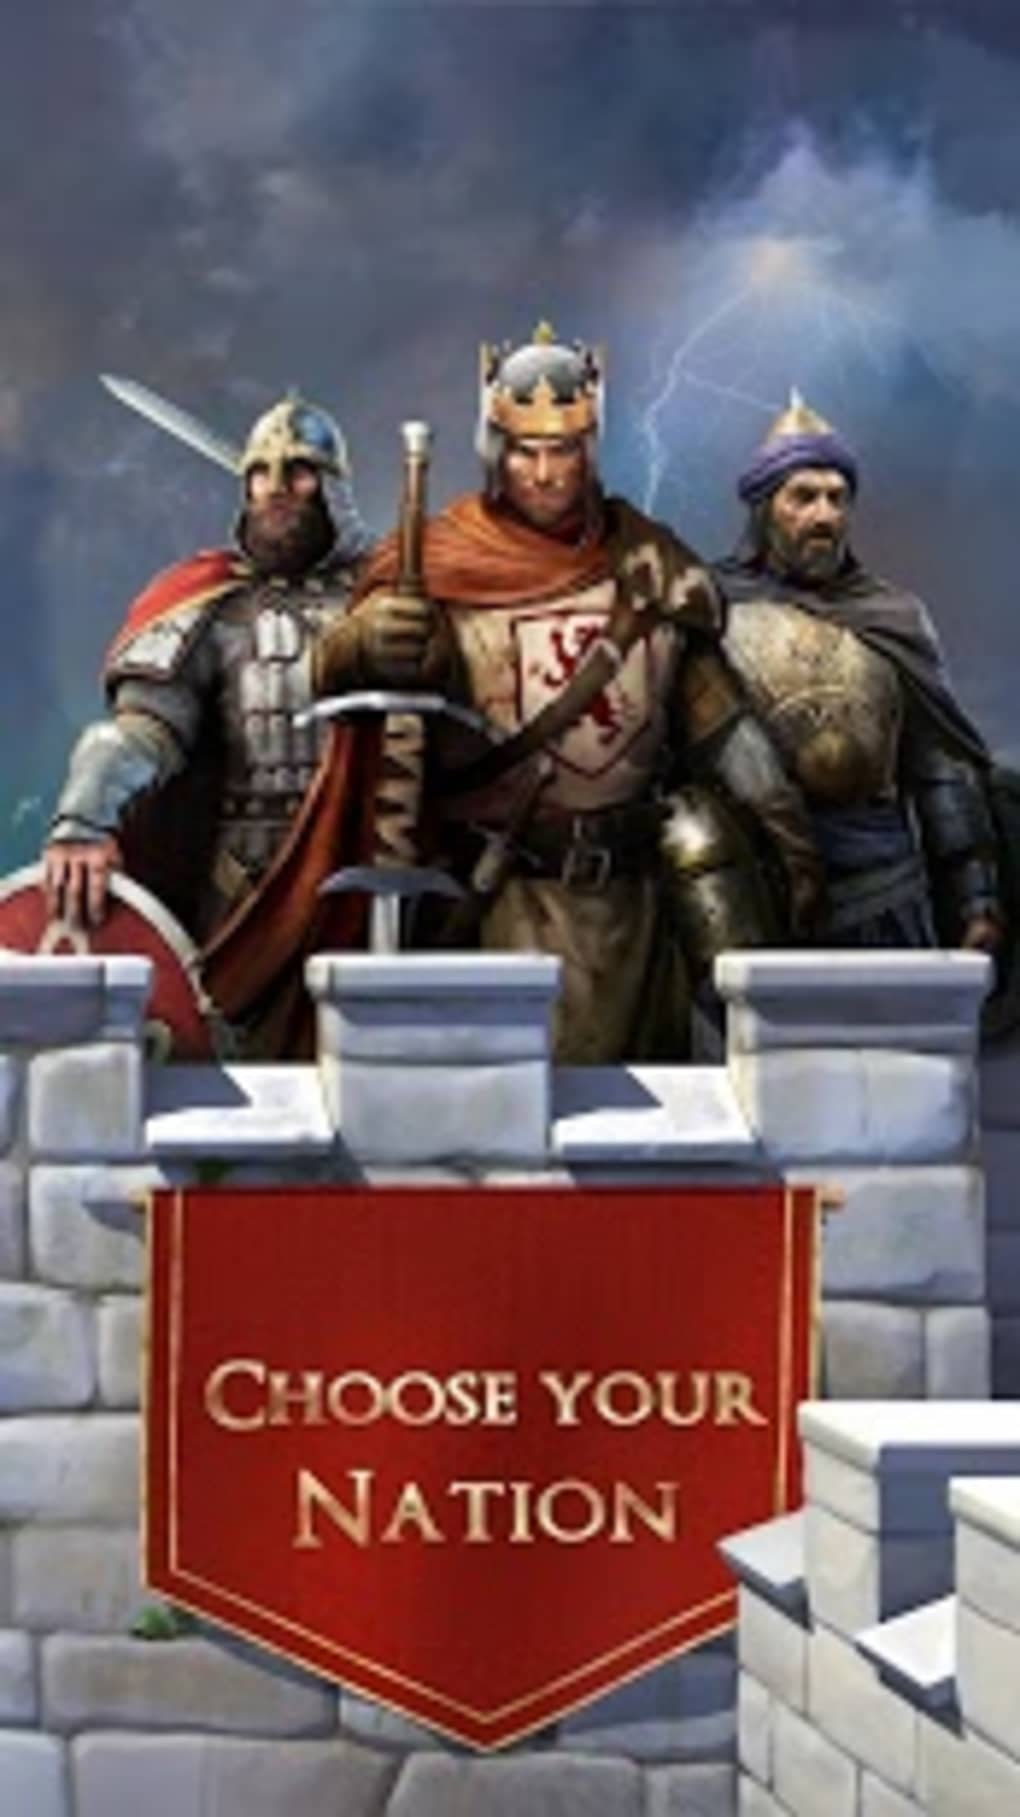 RPG DO SERJÃO - March of Empires: War of Lords Jogo de estratégia